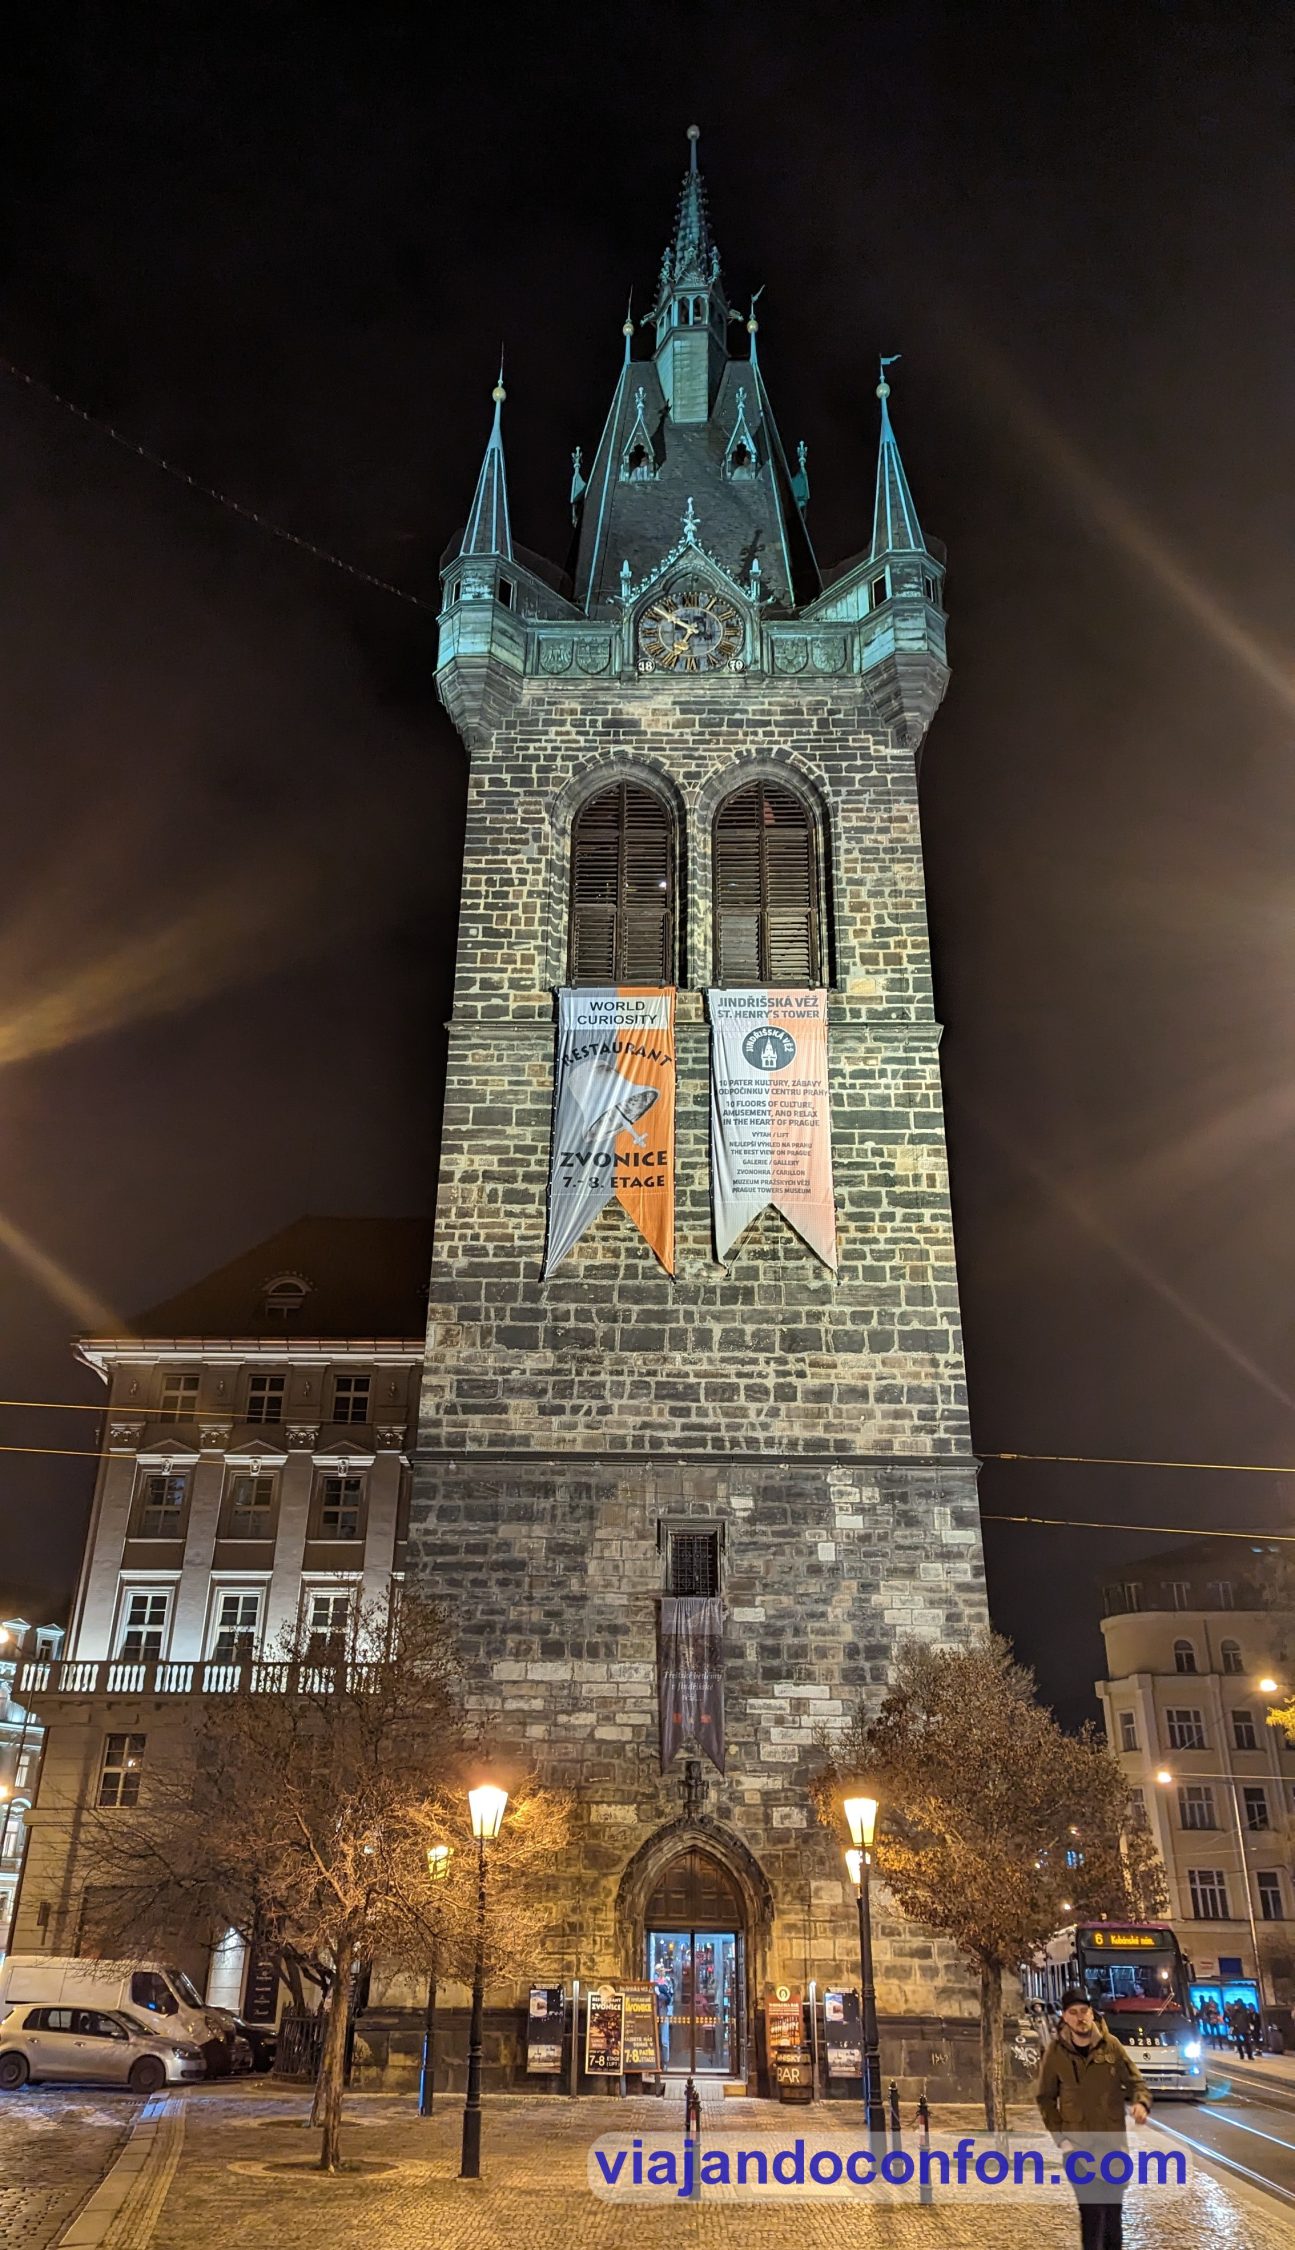 Jindřišská věž, la Torre de Jindřich
Praga / Prague